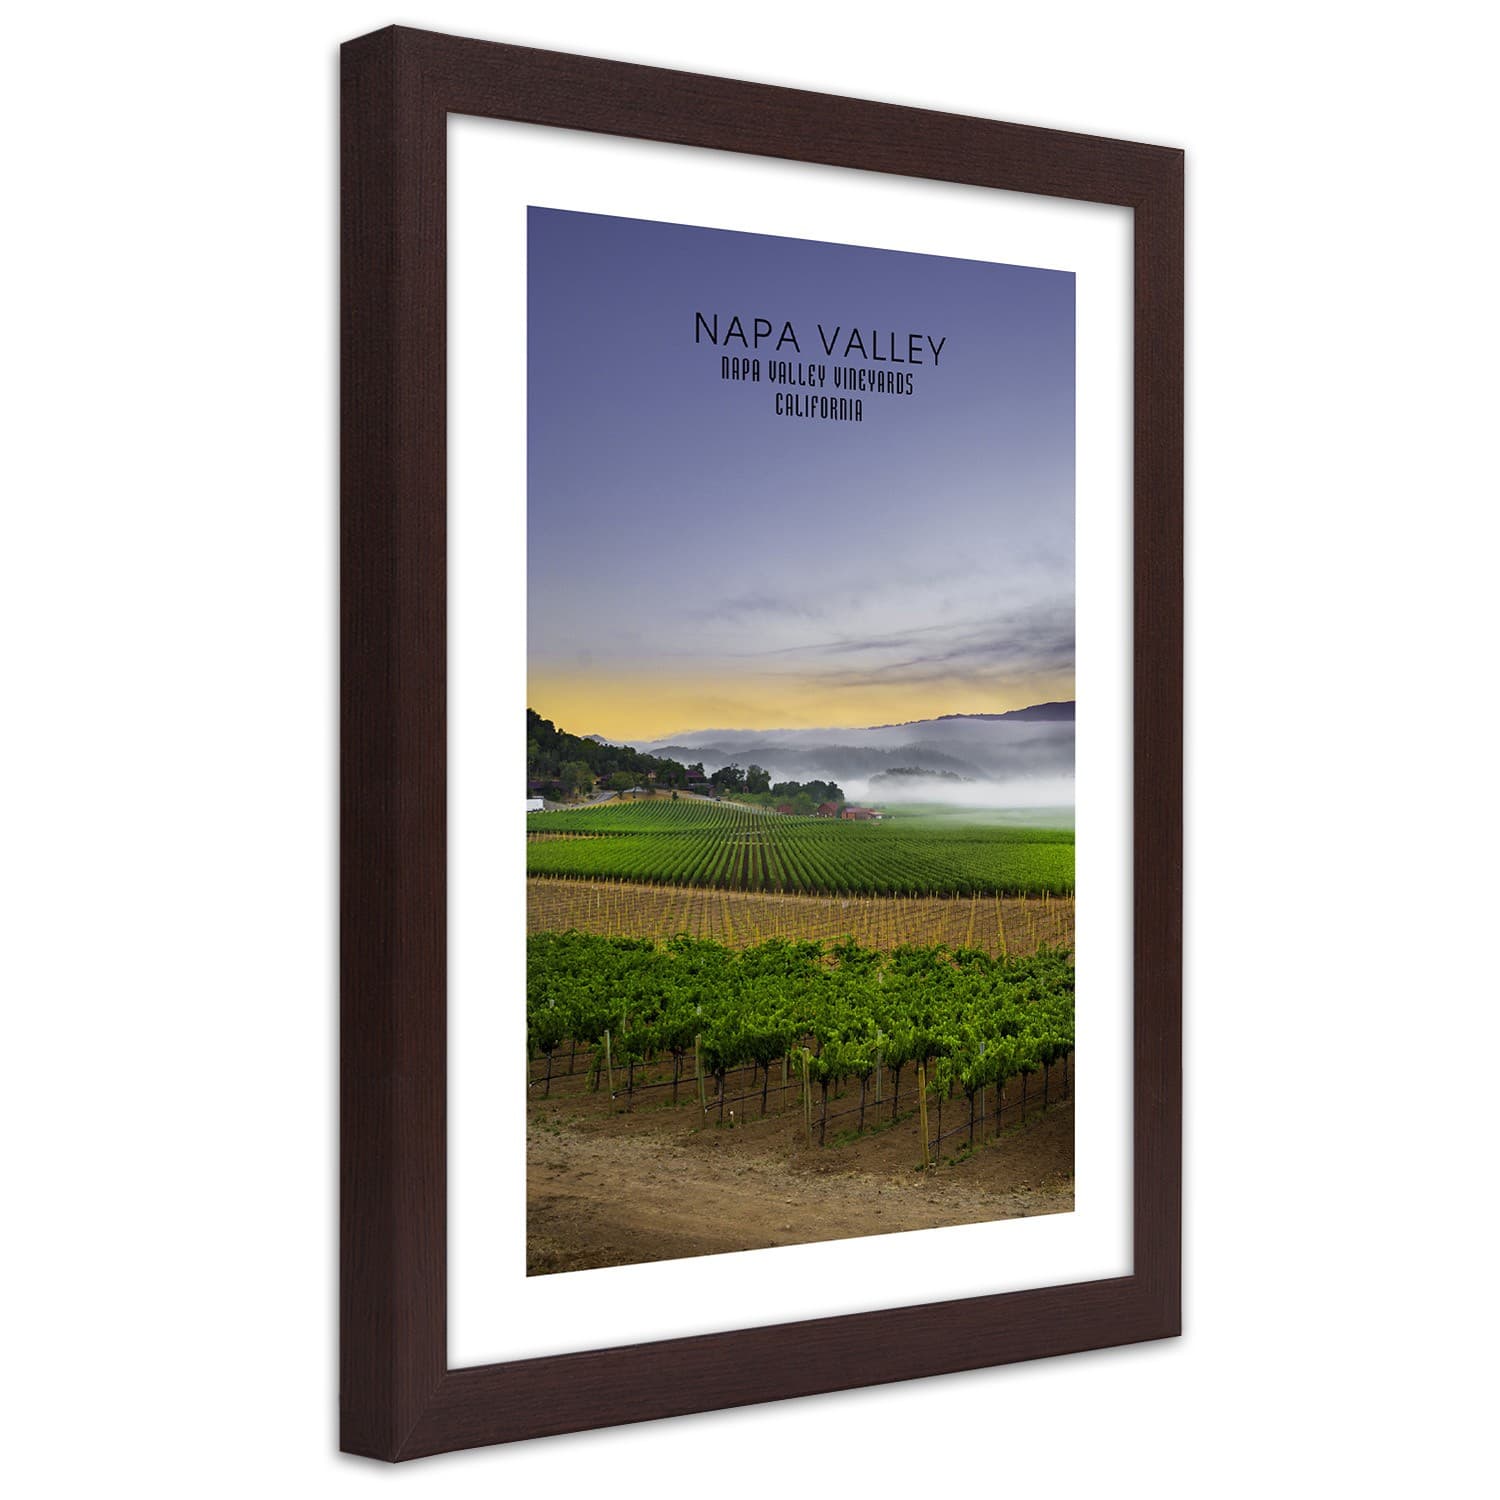 Plakat w ramie brązowej, Wieczór nad Napa Valley (Rozmiar 60x90)